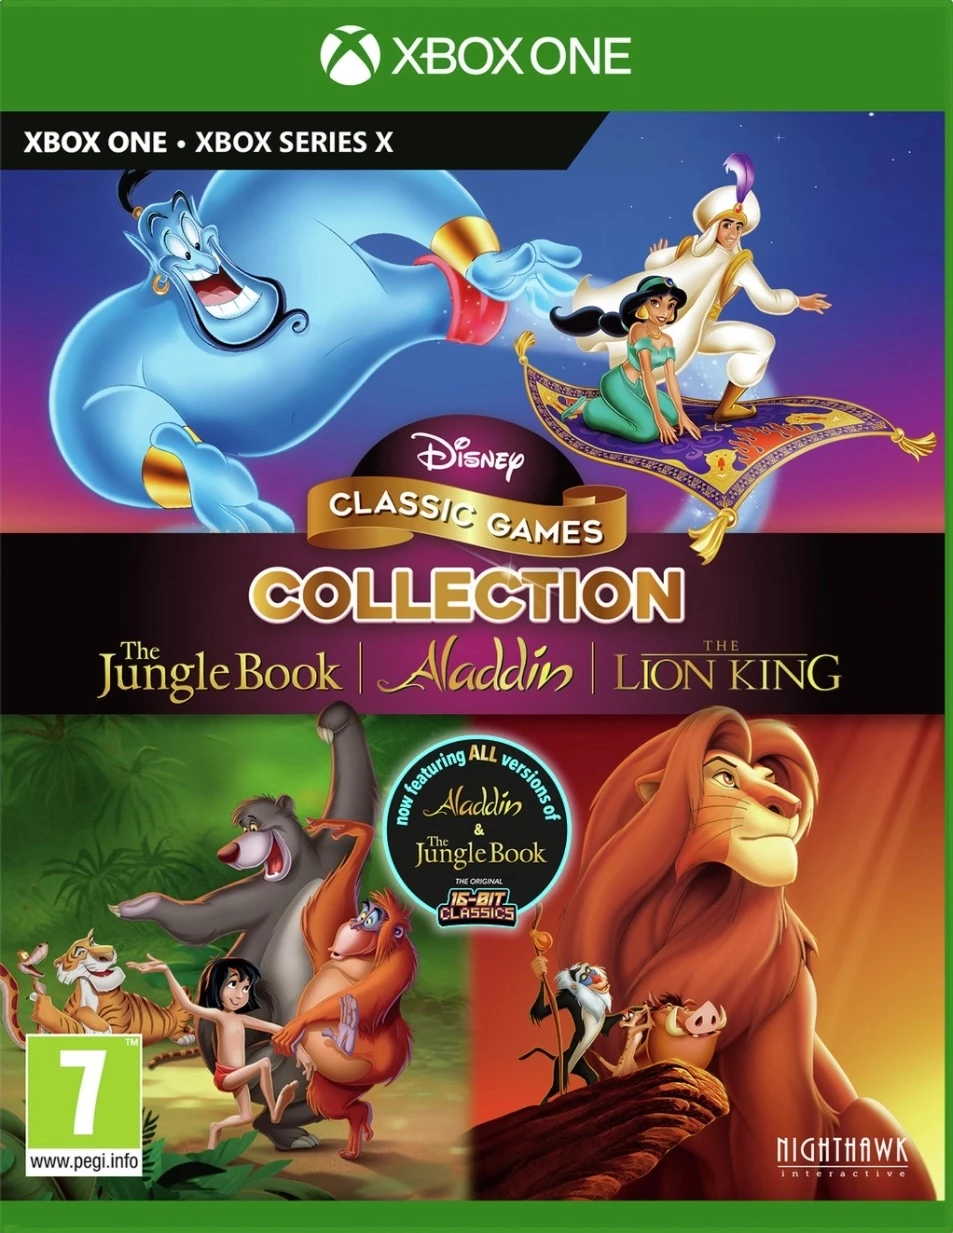 overhandigen Triatleet Draak Disney Classic Games Collection: The Jungle Book, Aladdin and The Lion King  kopen voor de XboxSeriesX - Laagste prijs op budgetgaming.nl